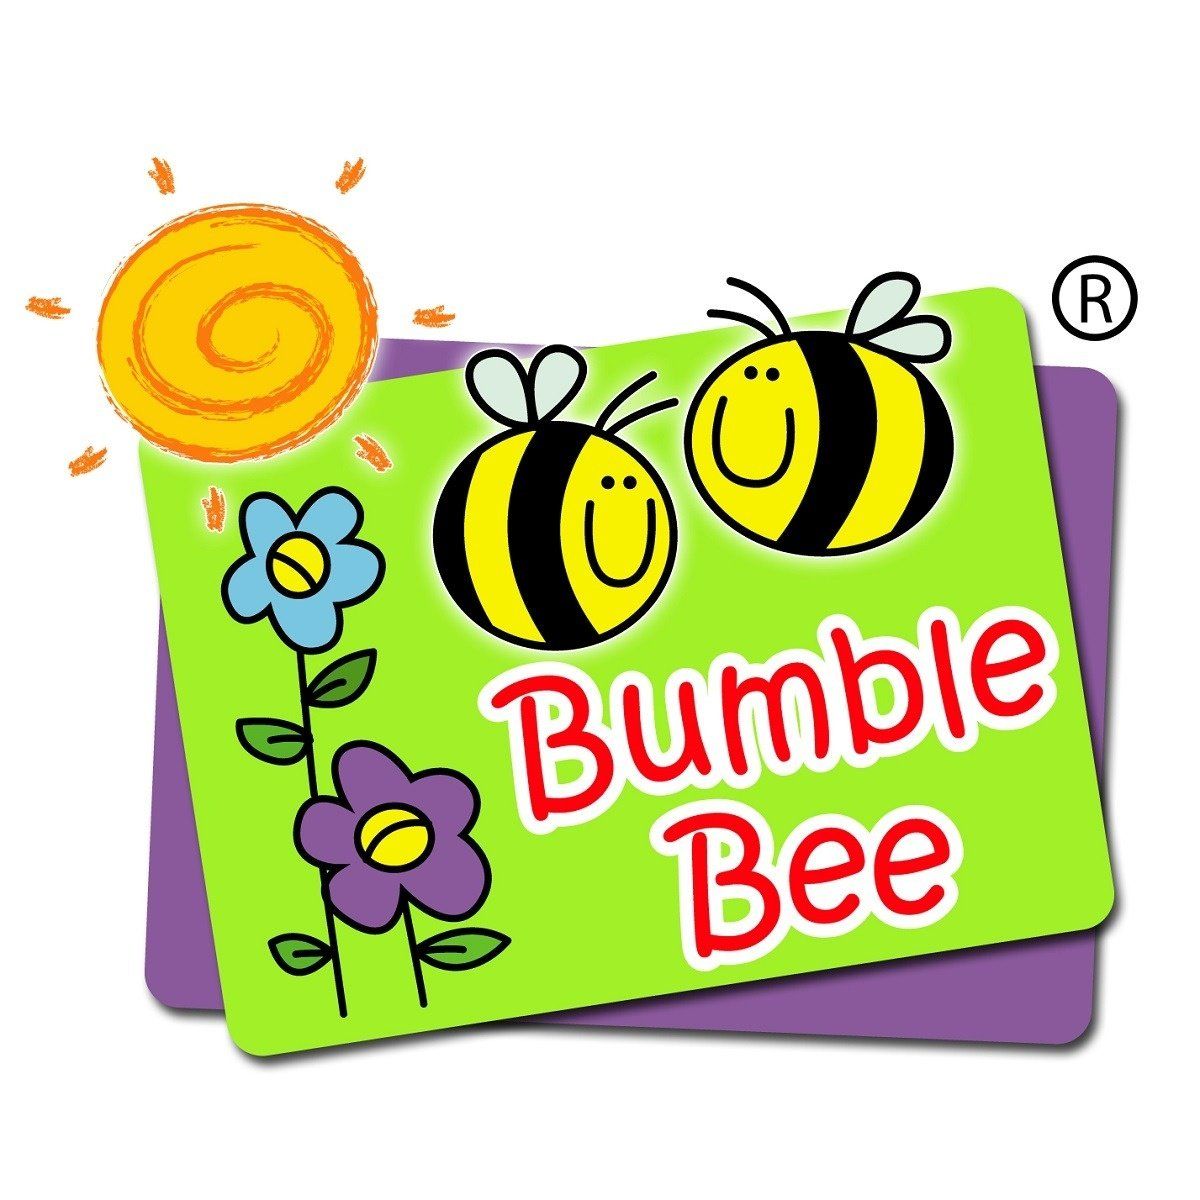 Bumble Bee Malaysia